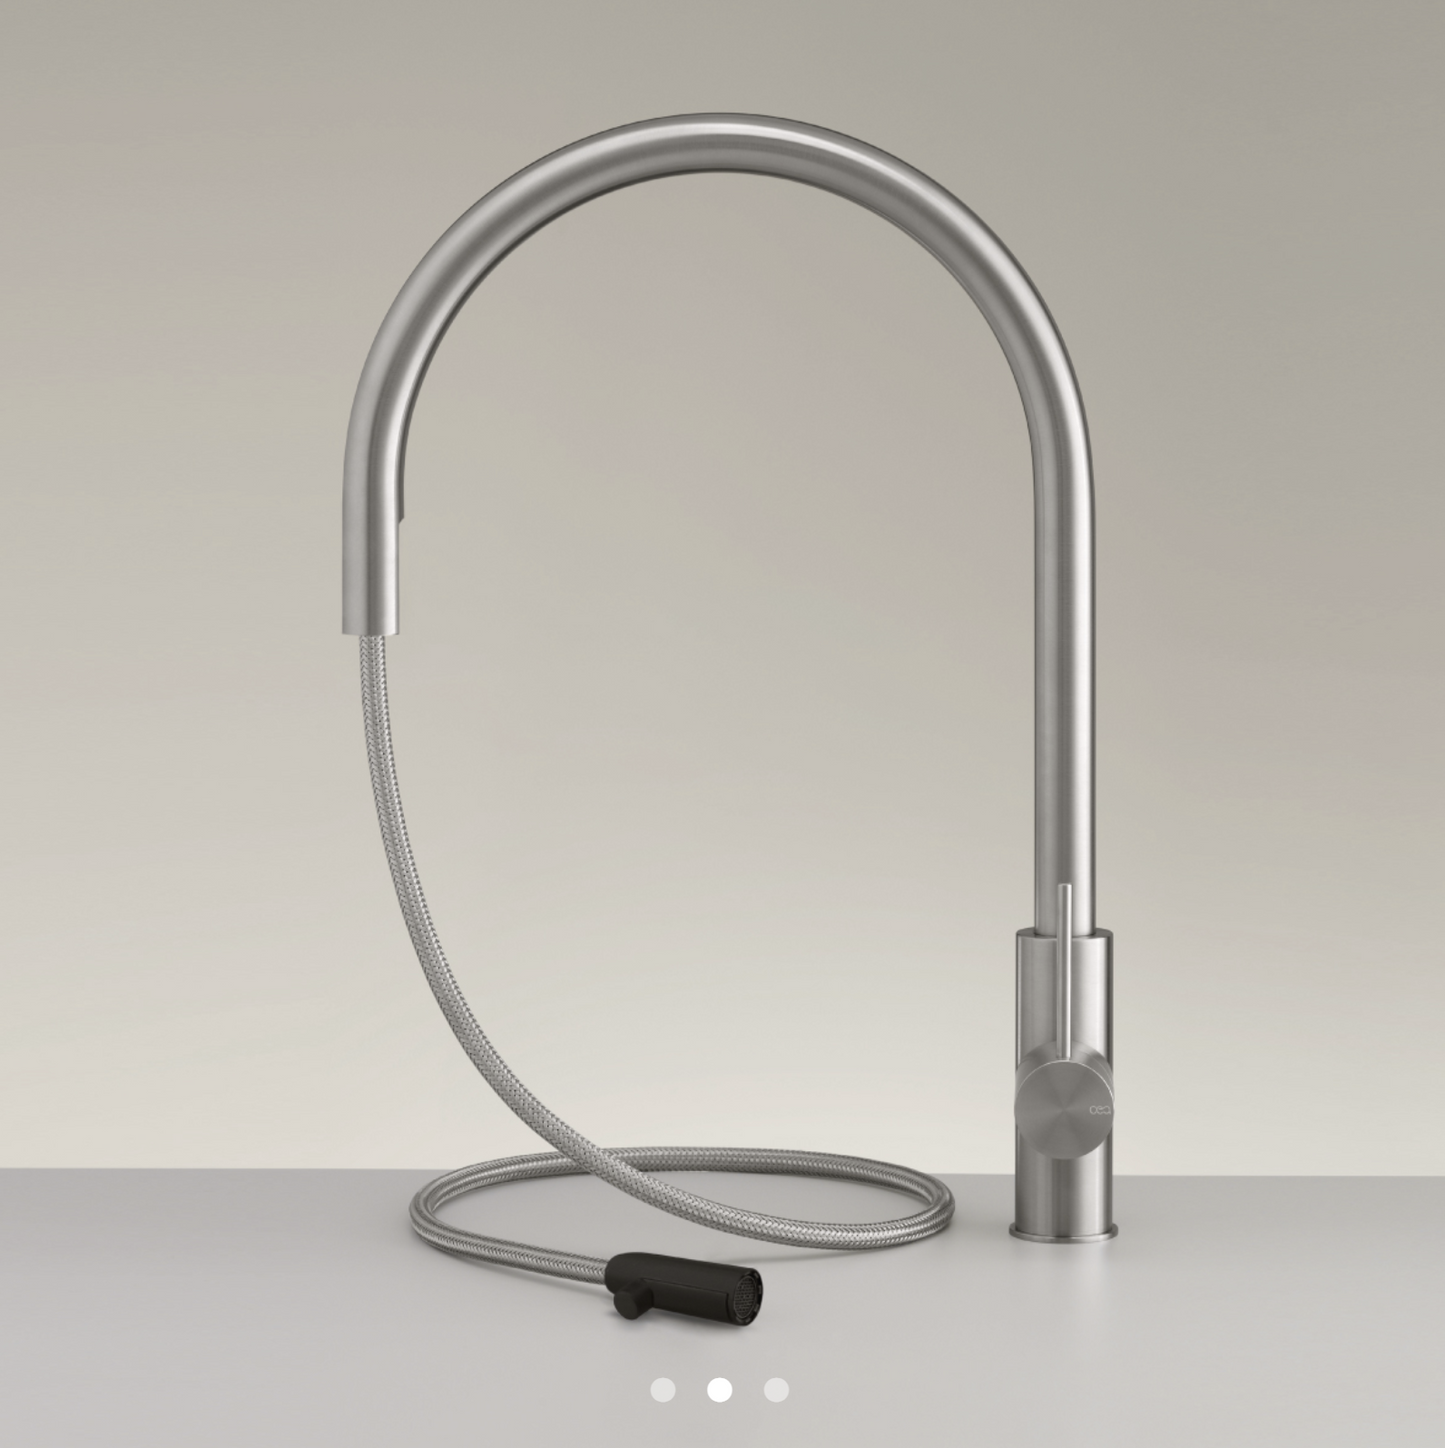 MIL201 | Faucet by CEA Design - $3,882.00 - $4,058.00